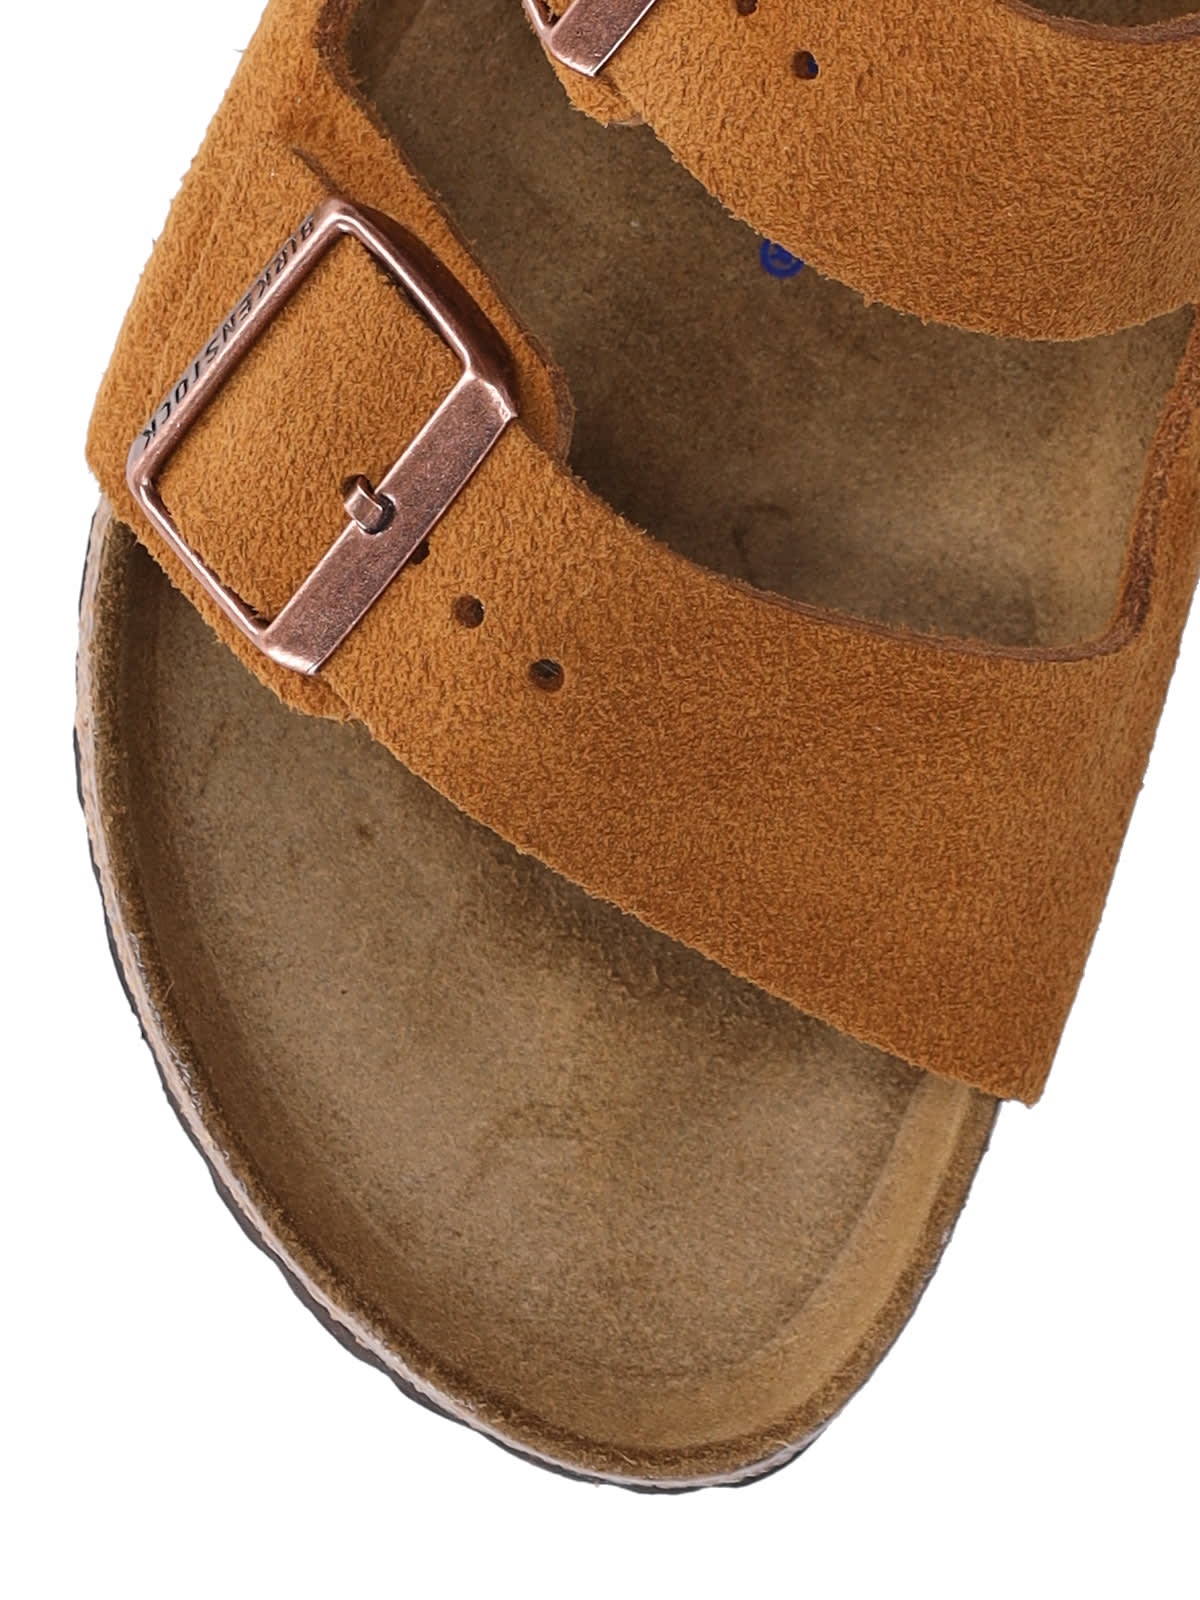 Shop Birkenstock Arizona Sandals In Brown